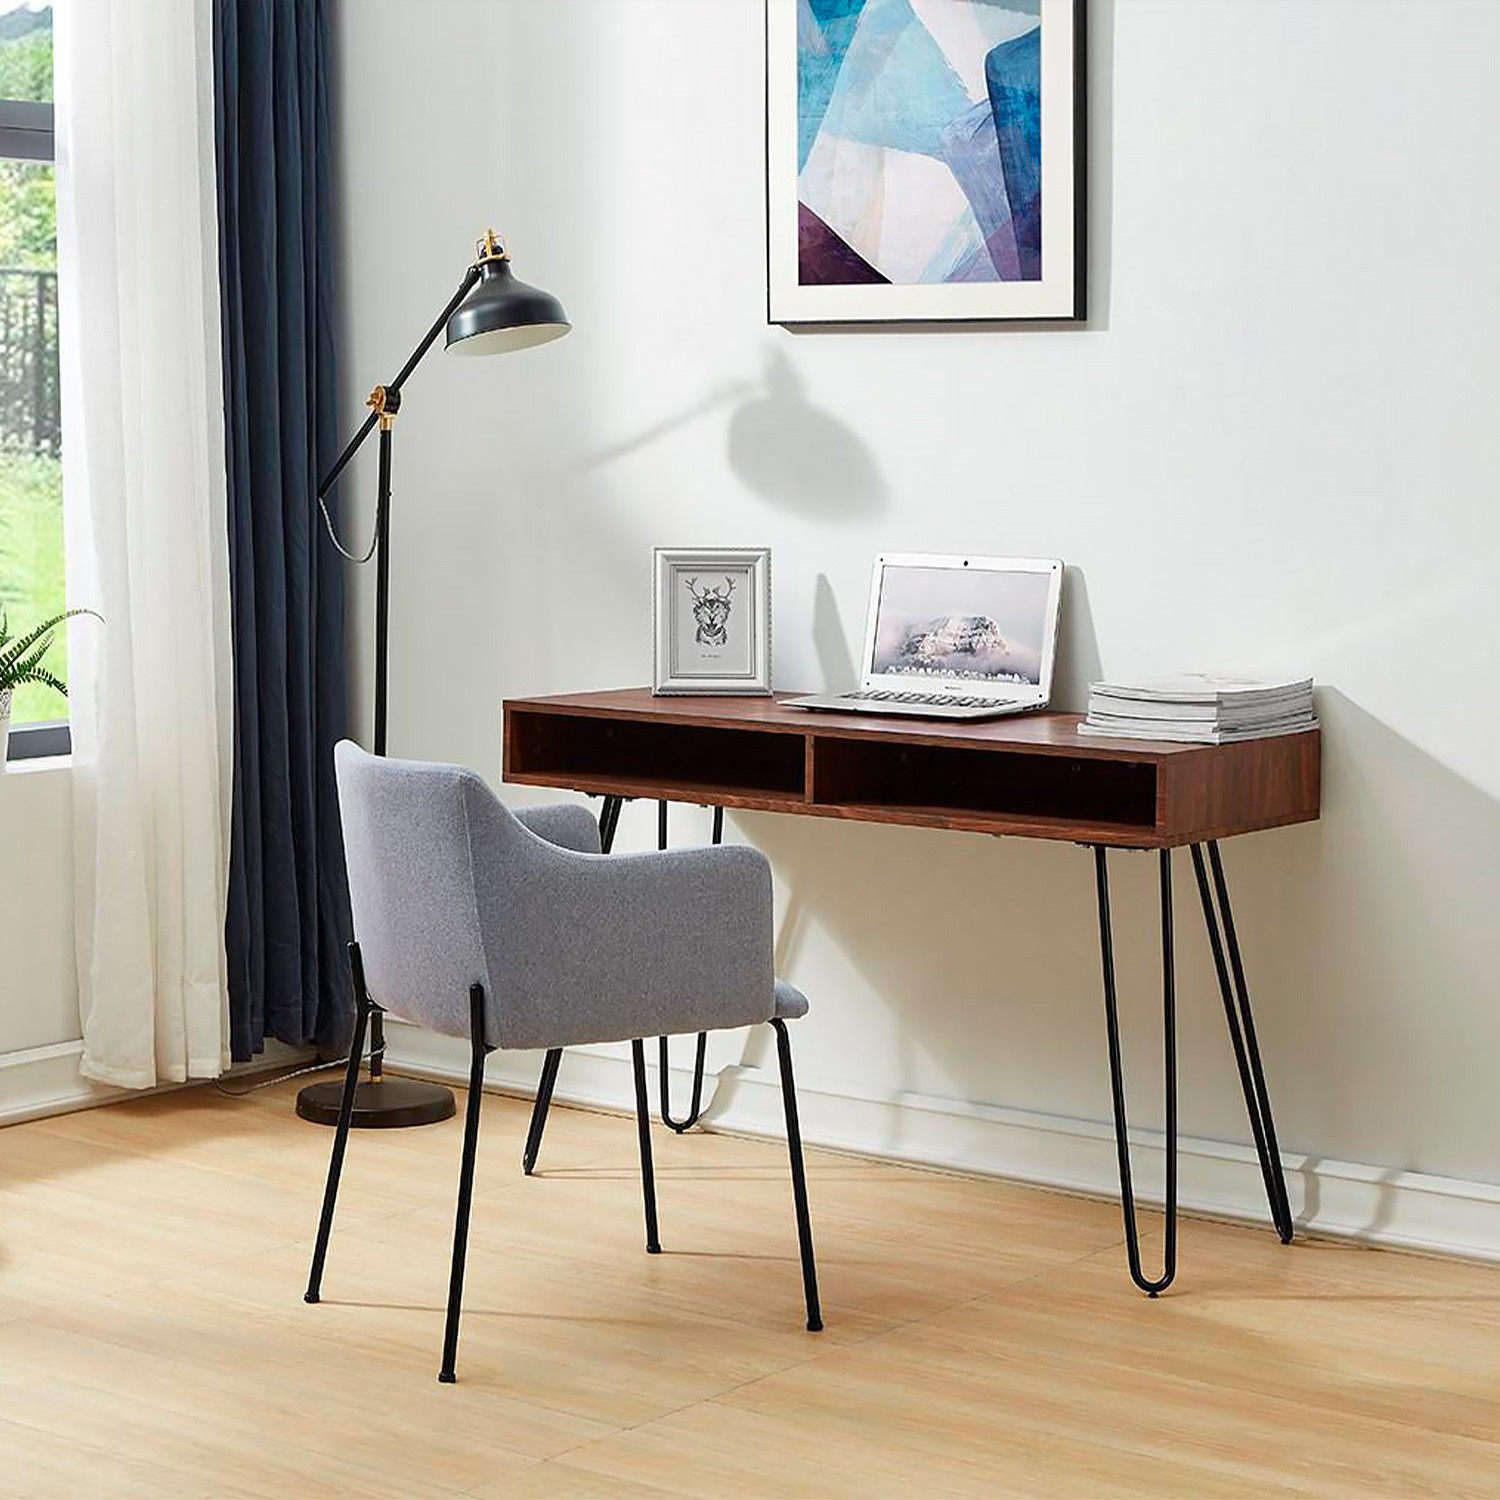 Компьютерные столы D-003 орех фото 1 — New Style of Furniture